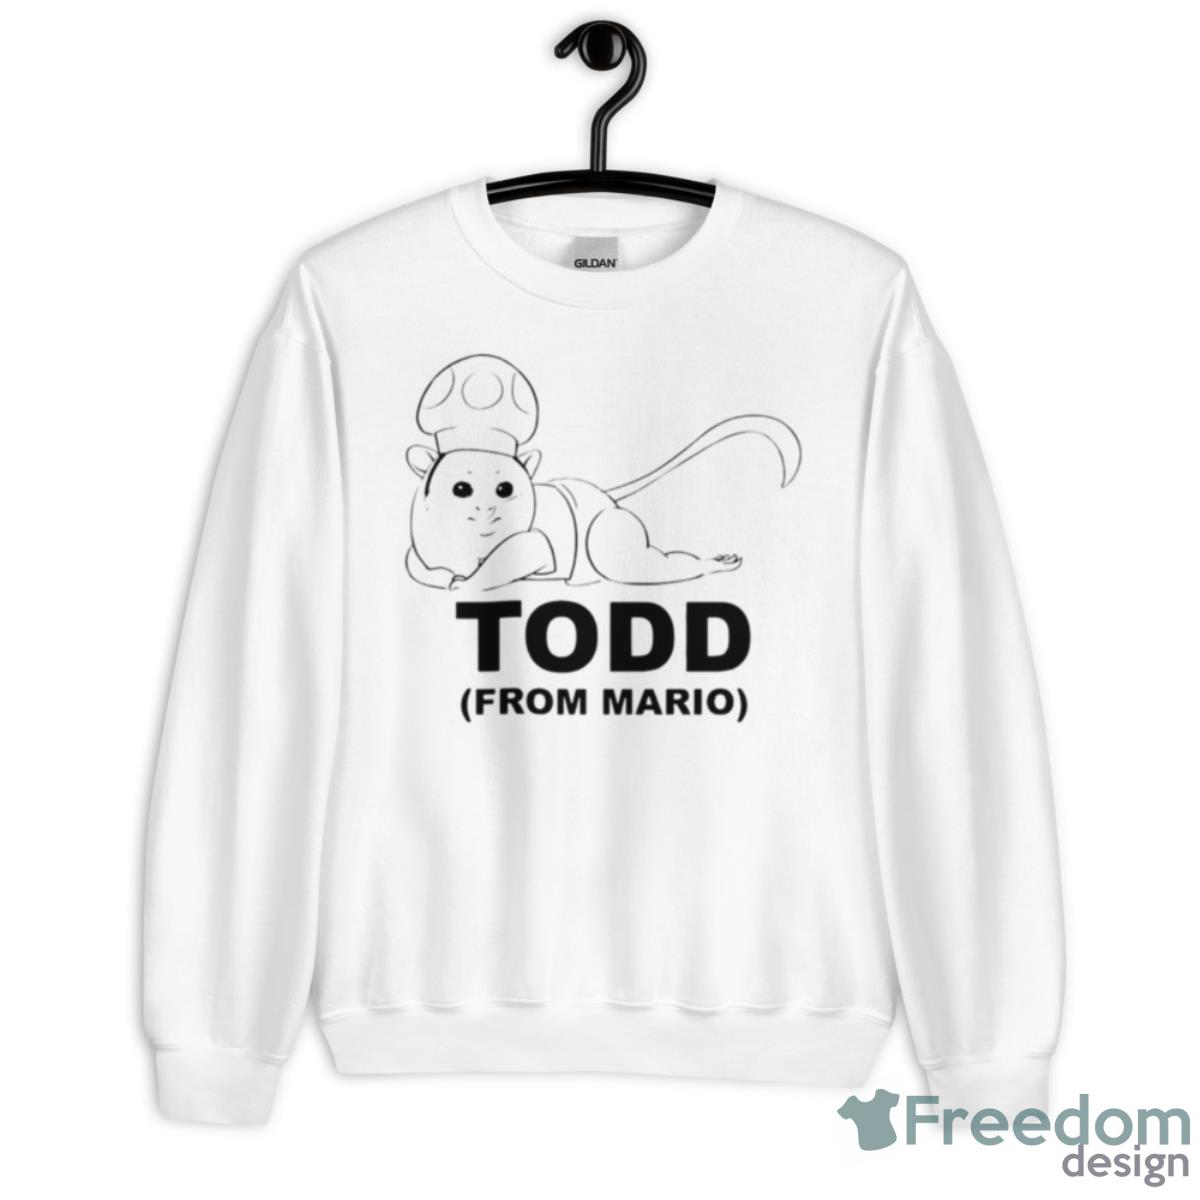 Todd From Mario Shirt